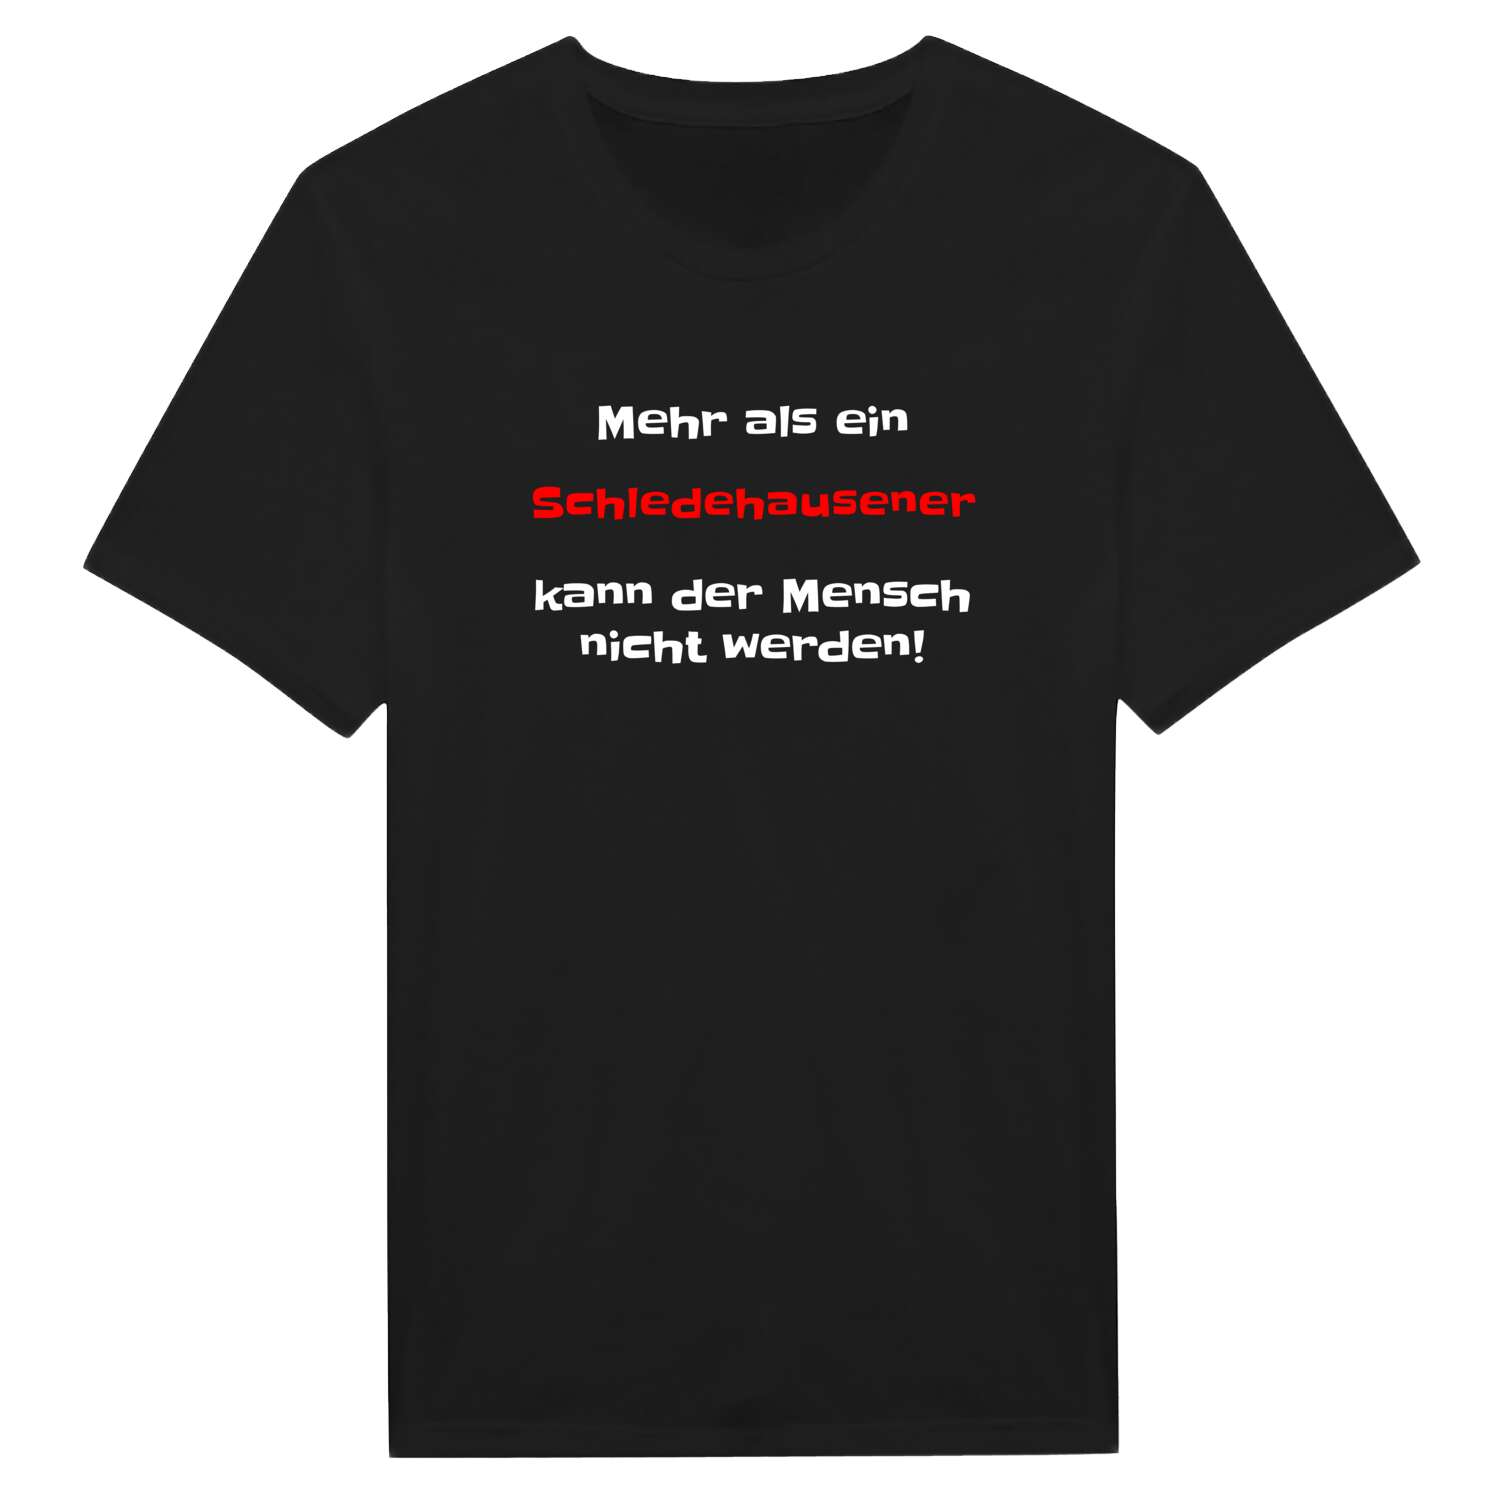 Schledehausen T-Shirt »Mehr als ein«